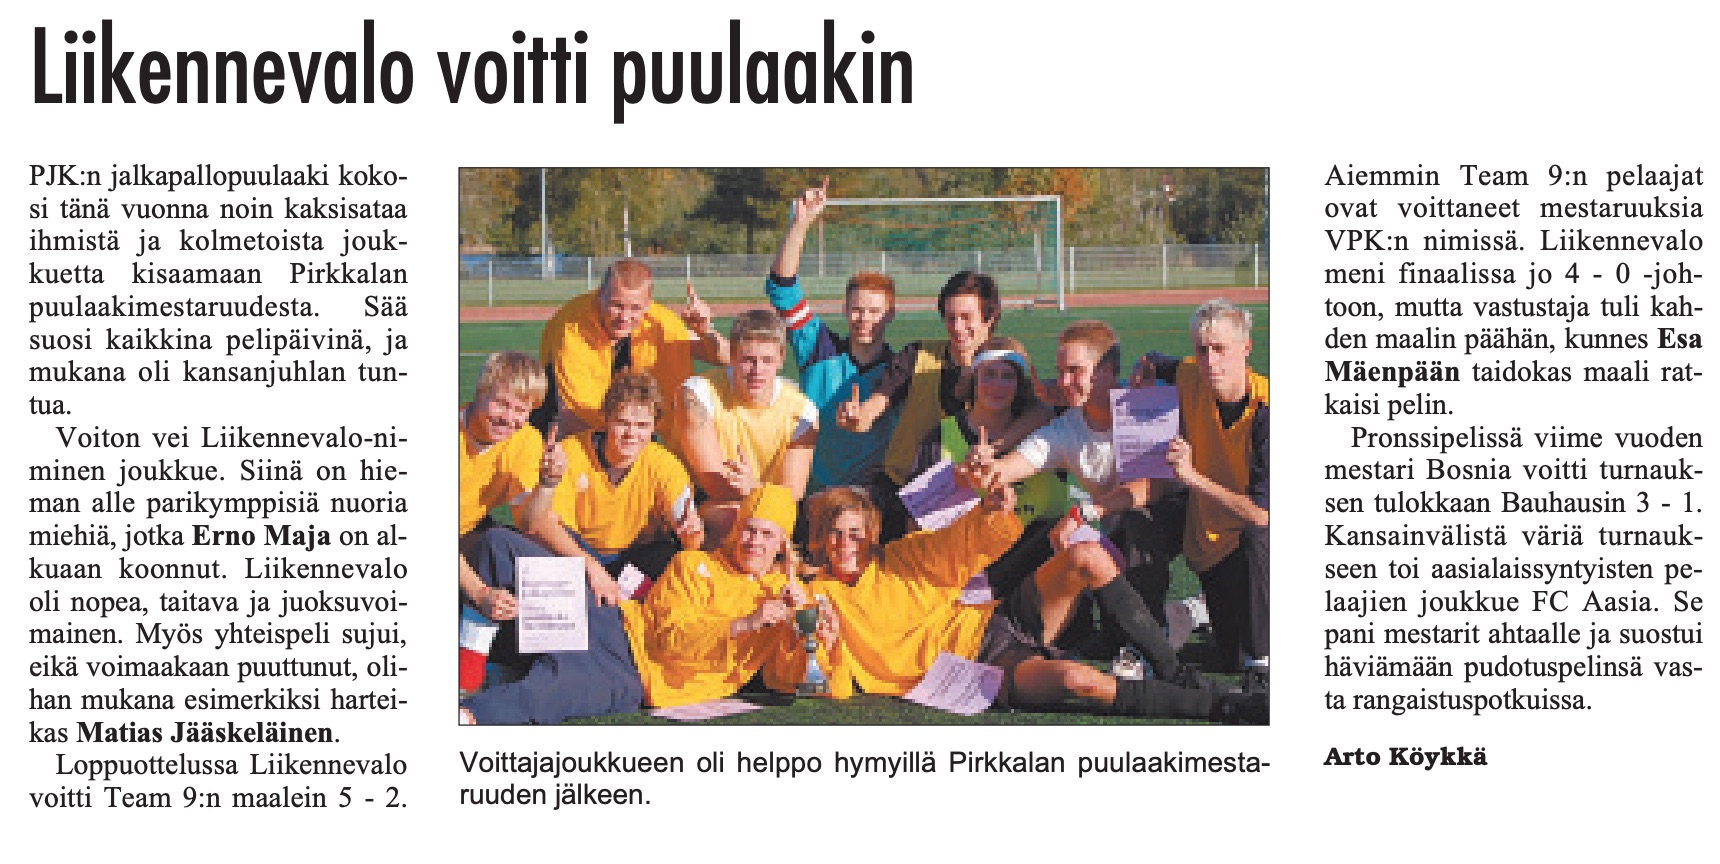 Turnausraportti Pirkkalaisessa 20.09. 2006